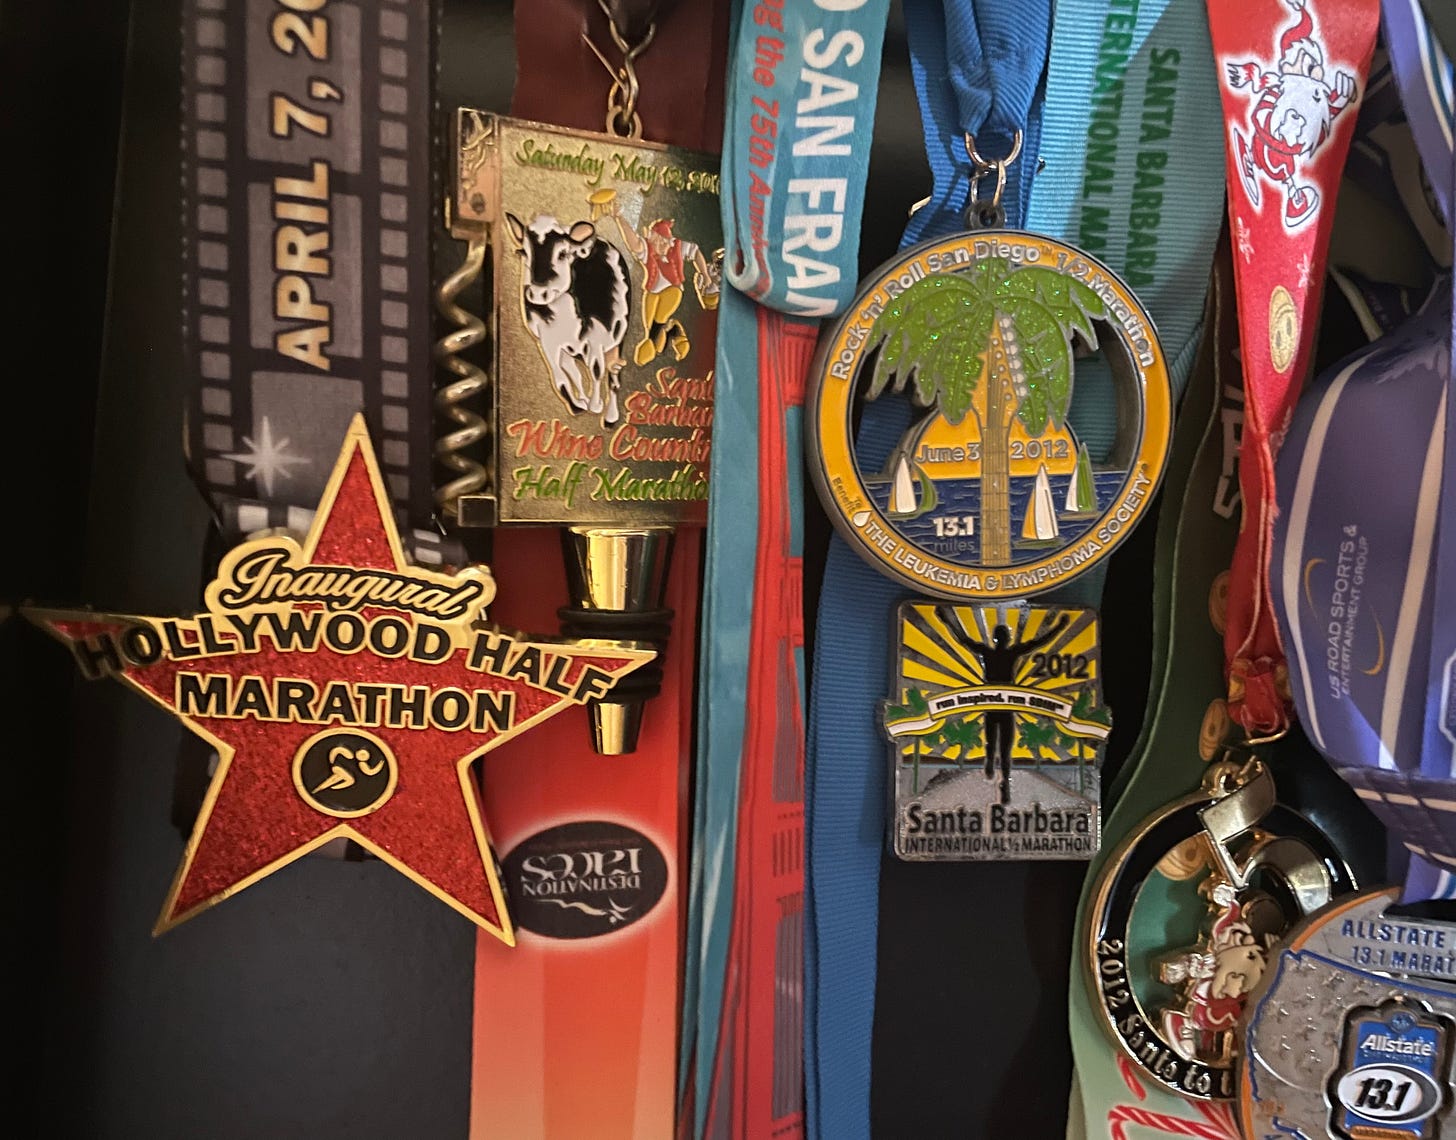 Half marathon medals